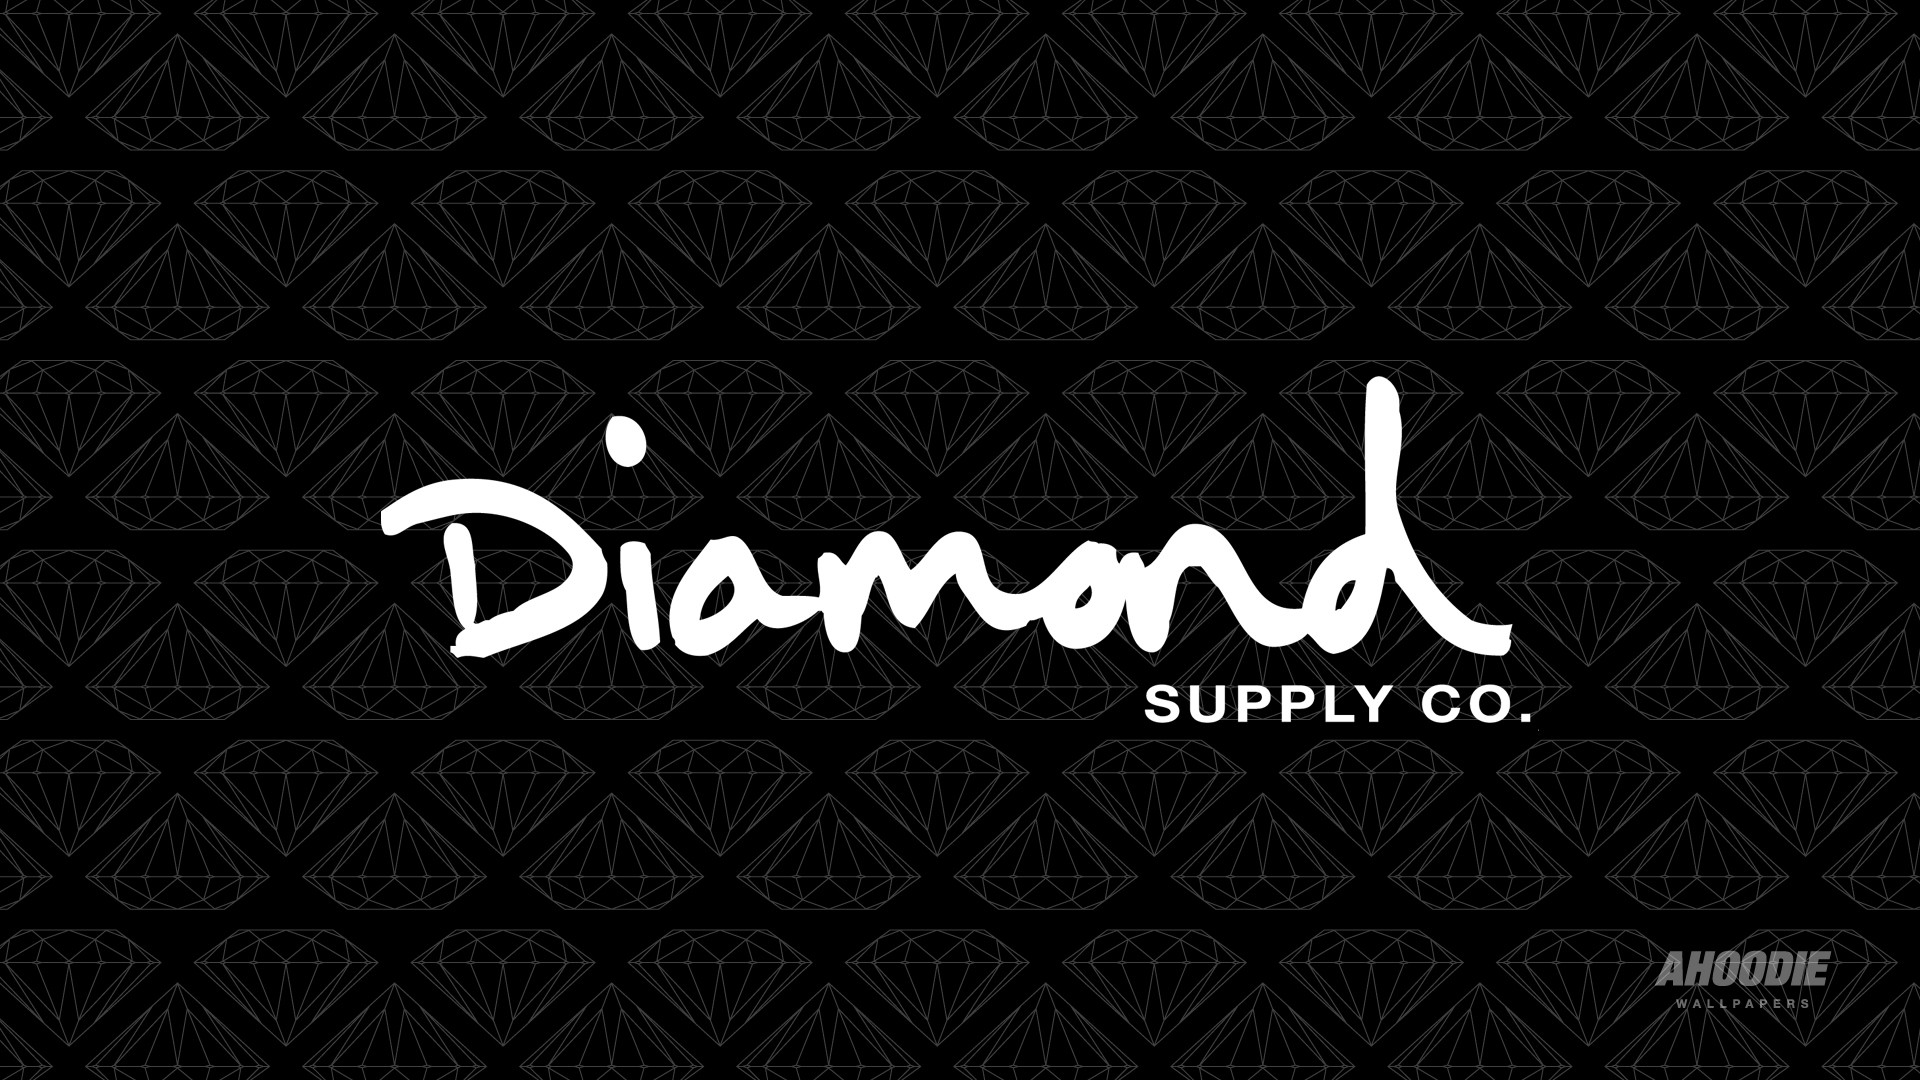 1920x1080 9 Diamond Supply Co Desktop Wallpapers | WPPSource